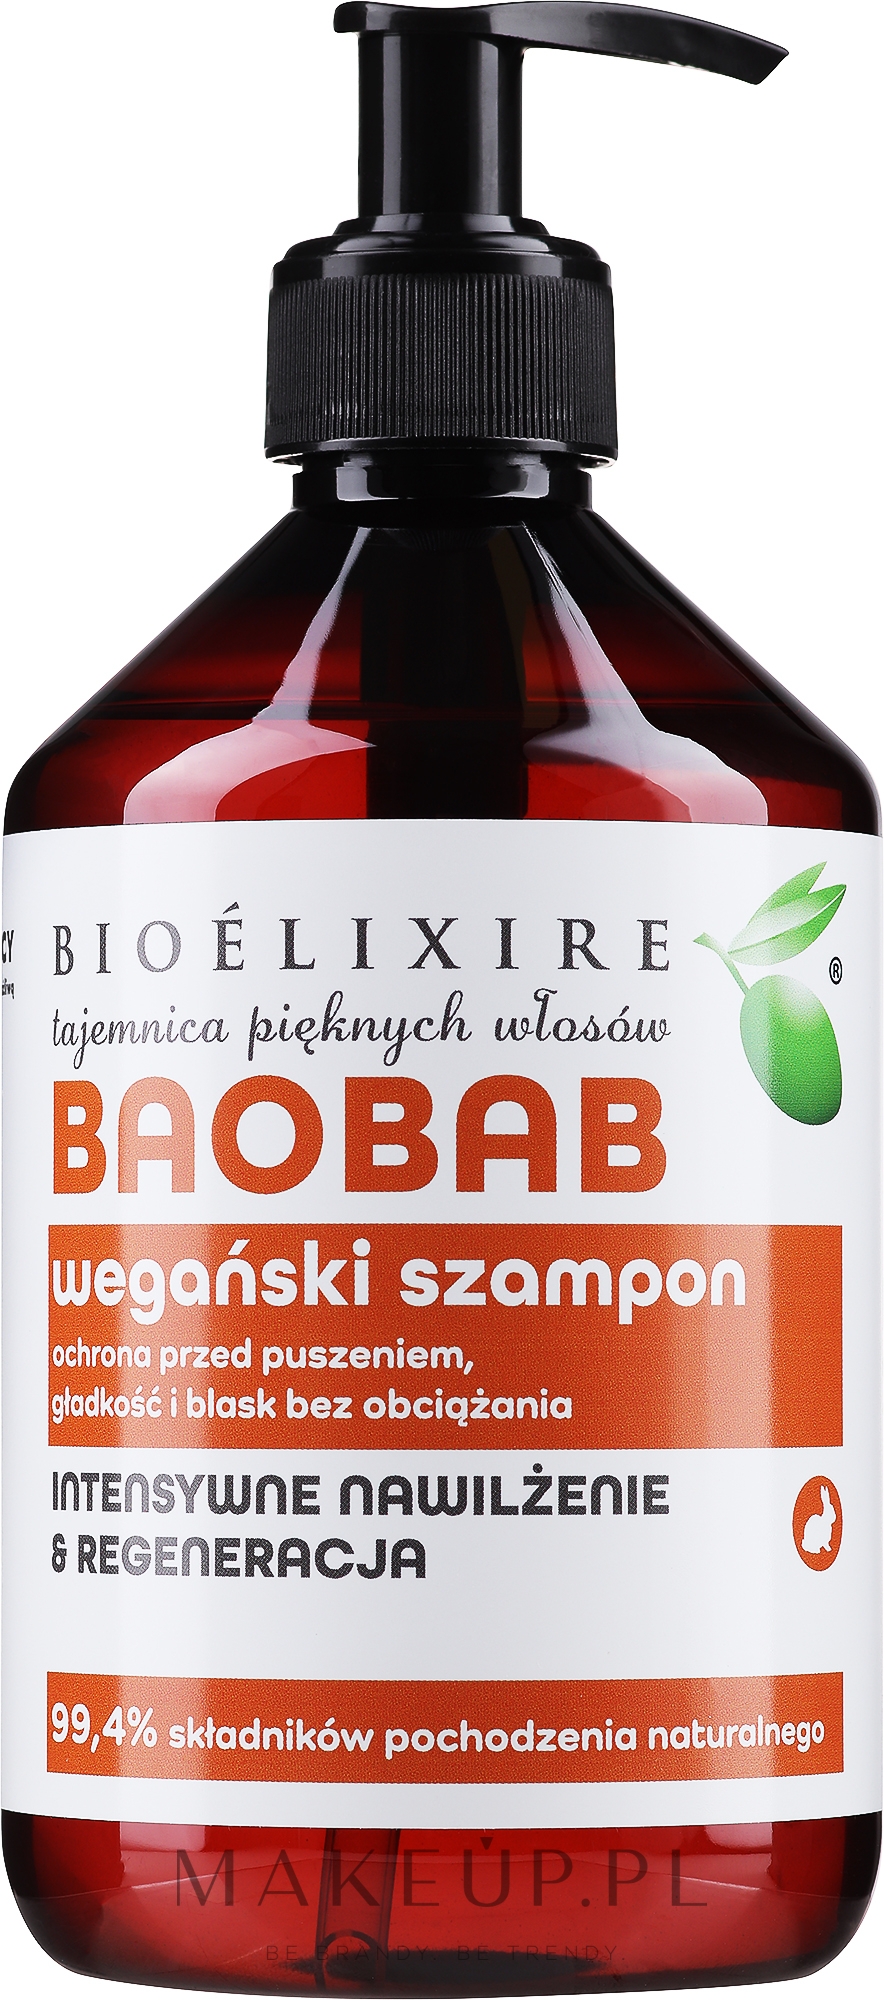 odżywka do włosów kręconych z wyciągiem z baobabu